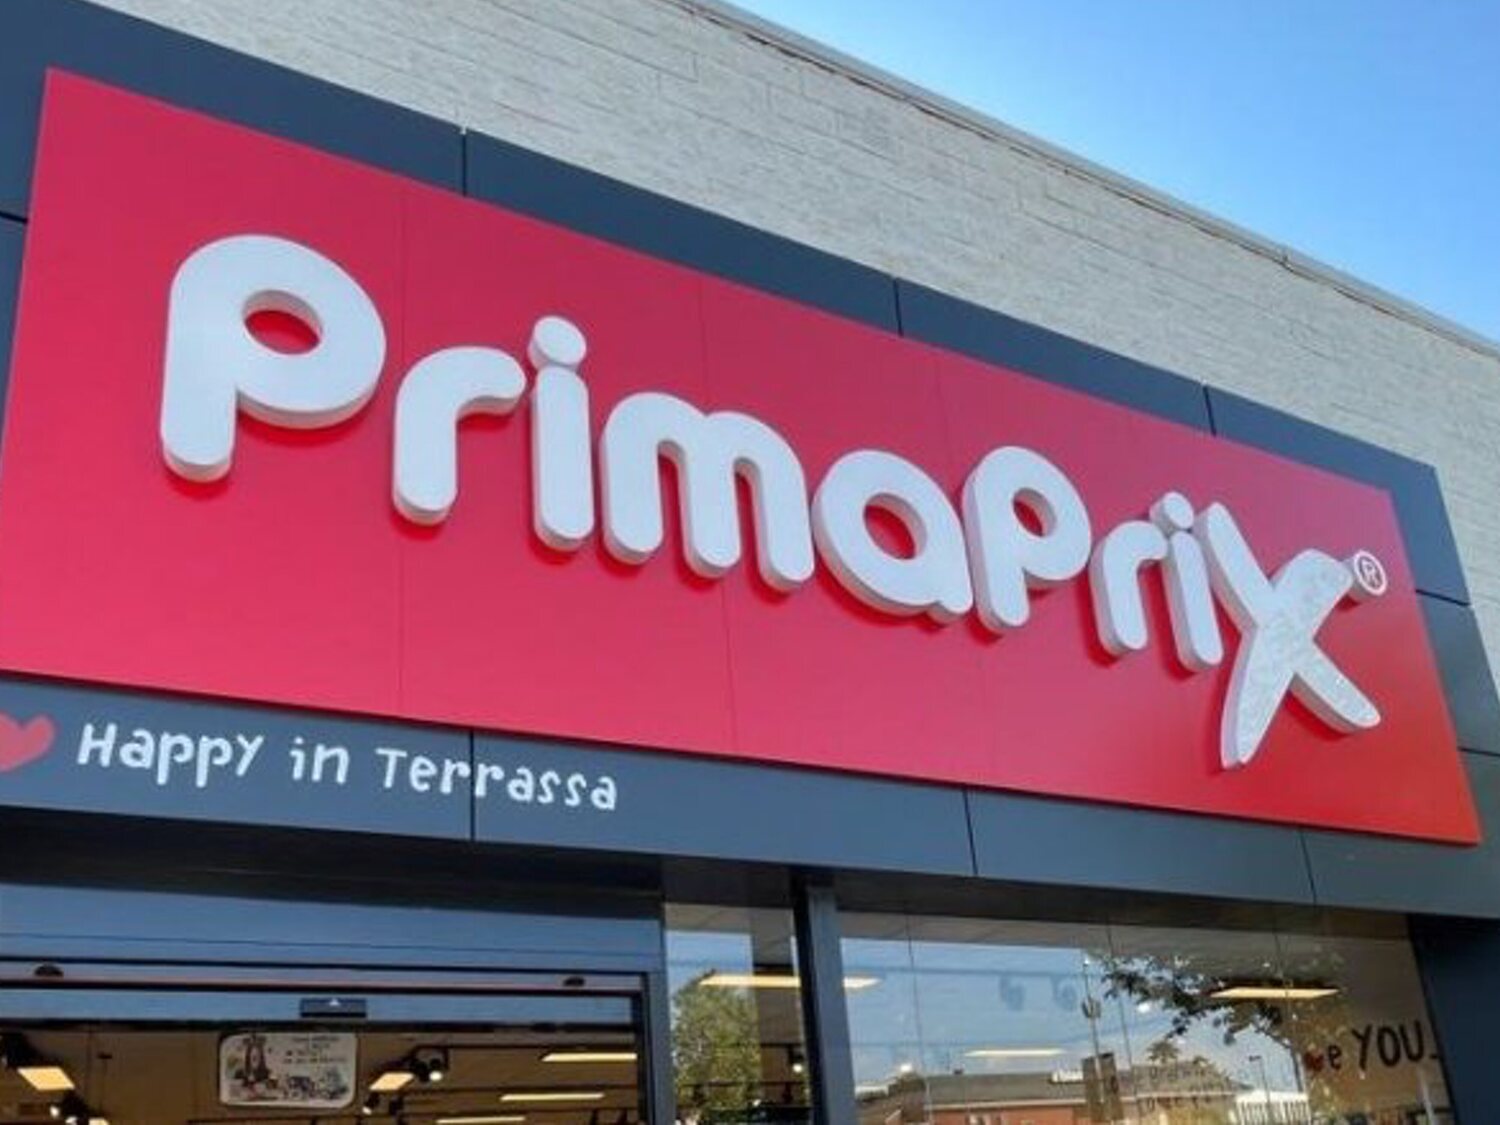 Primaprix gira su estrategia y abre nuevas tiendas en España con una nueva marca comercial